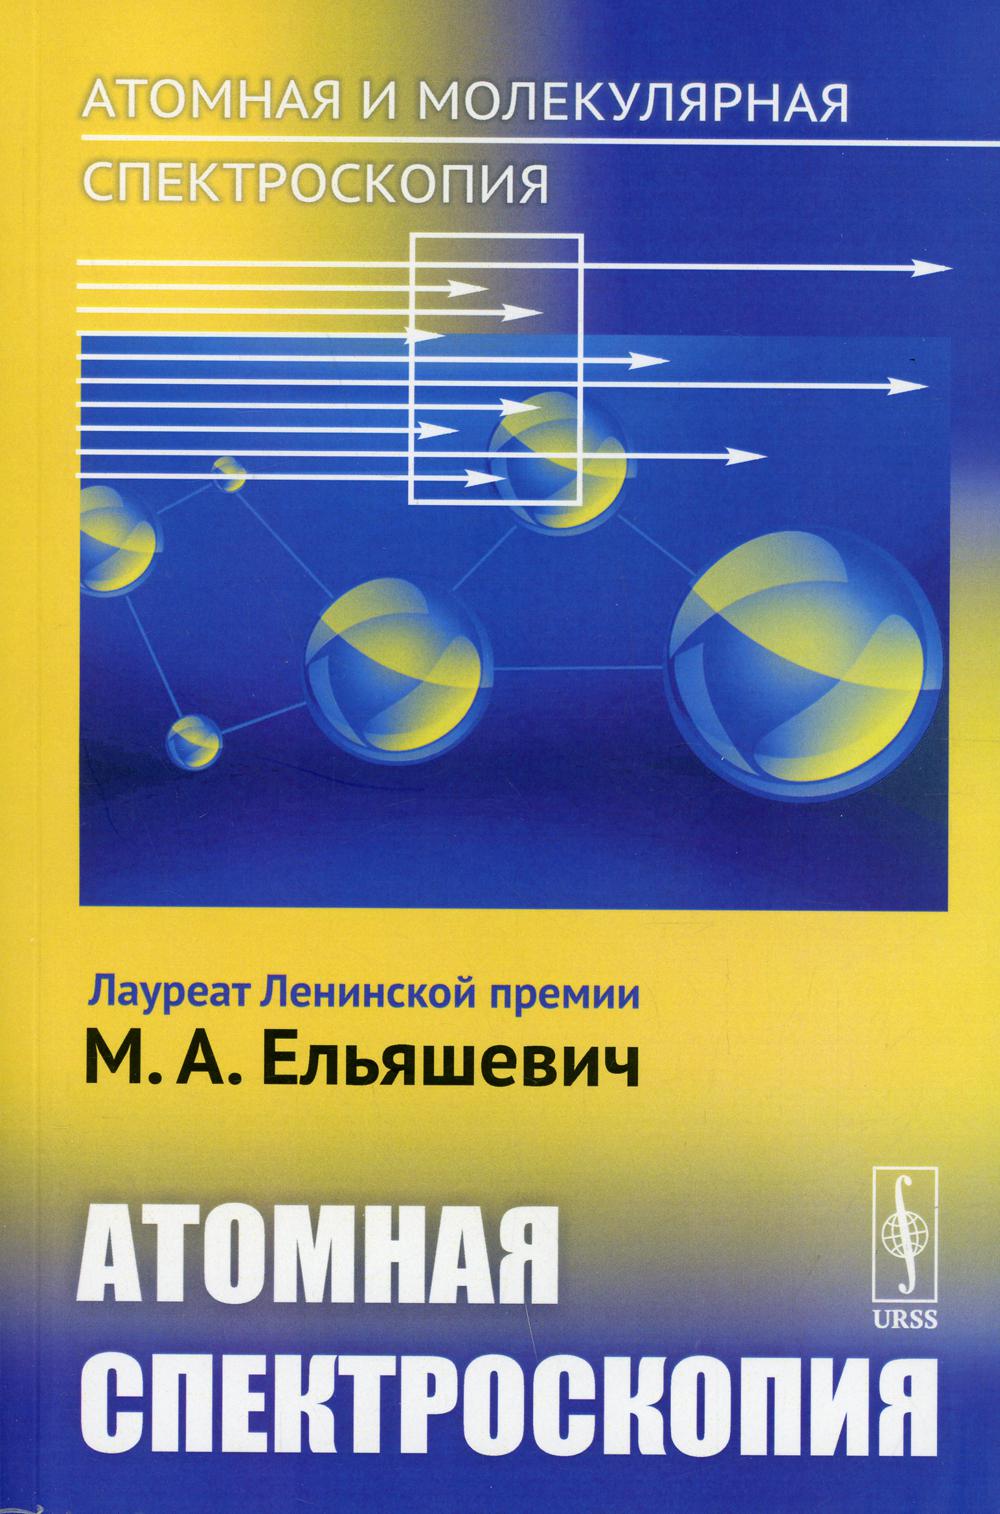 фото Книга атомная и молекулярная спектроскопия: атомная спектроскопия изд. стер. ленанд